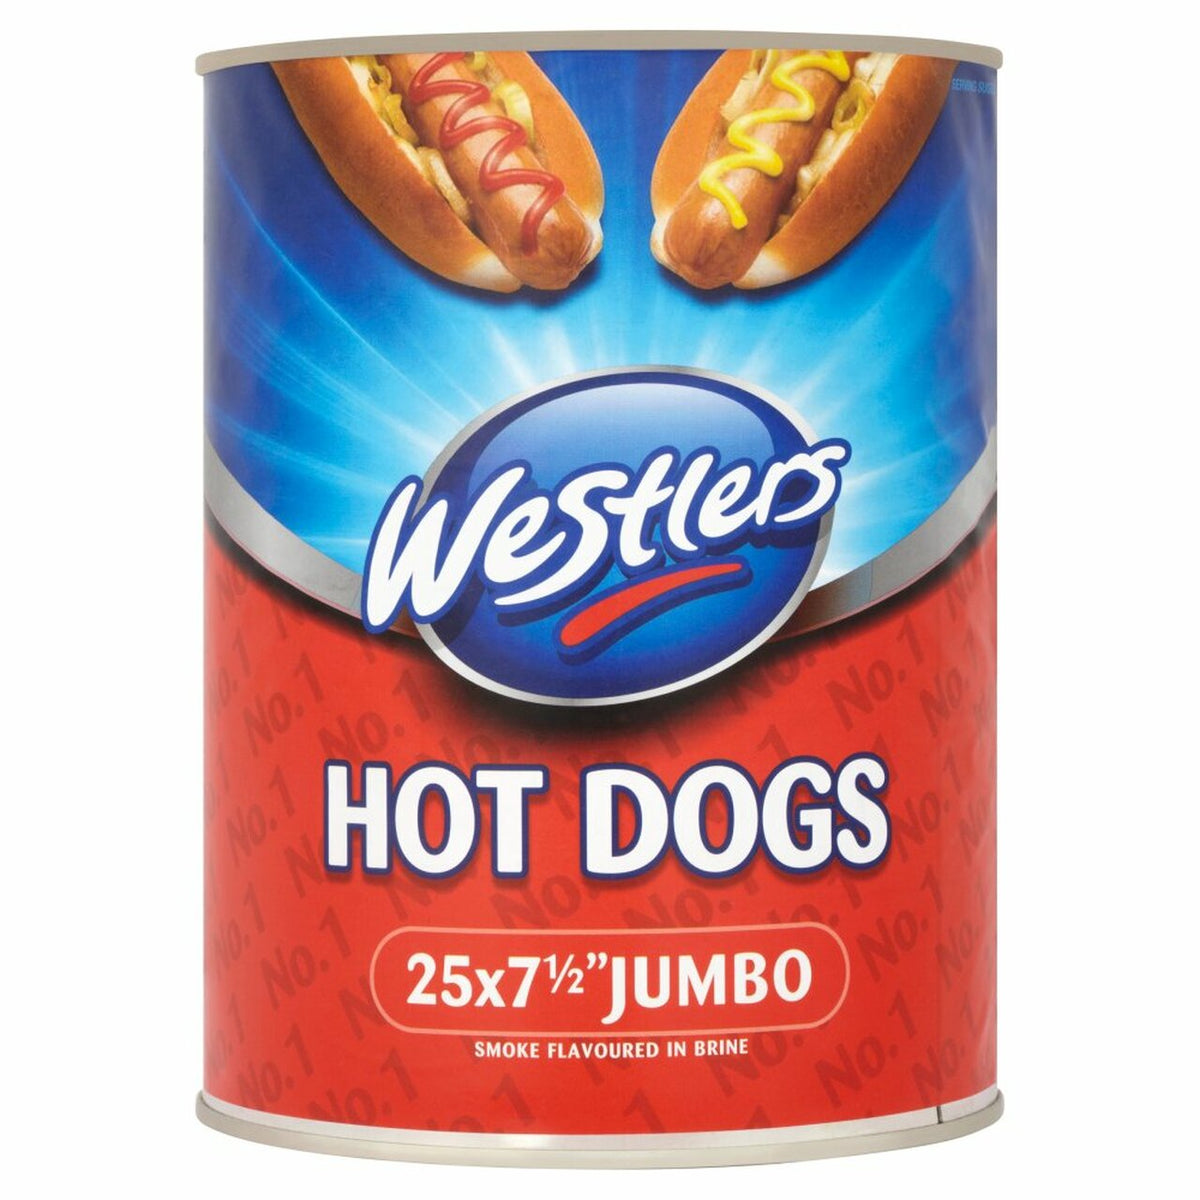 Westlers Jumbo Hot Dogs 25 x 7½"